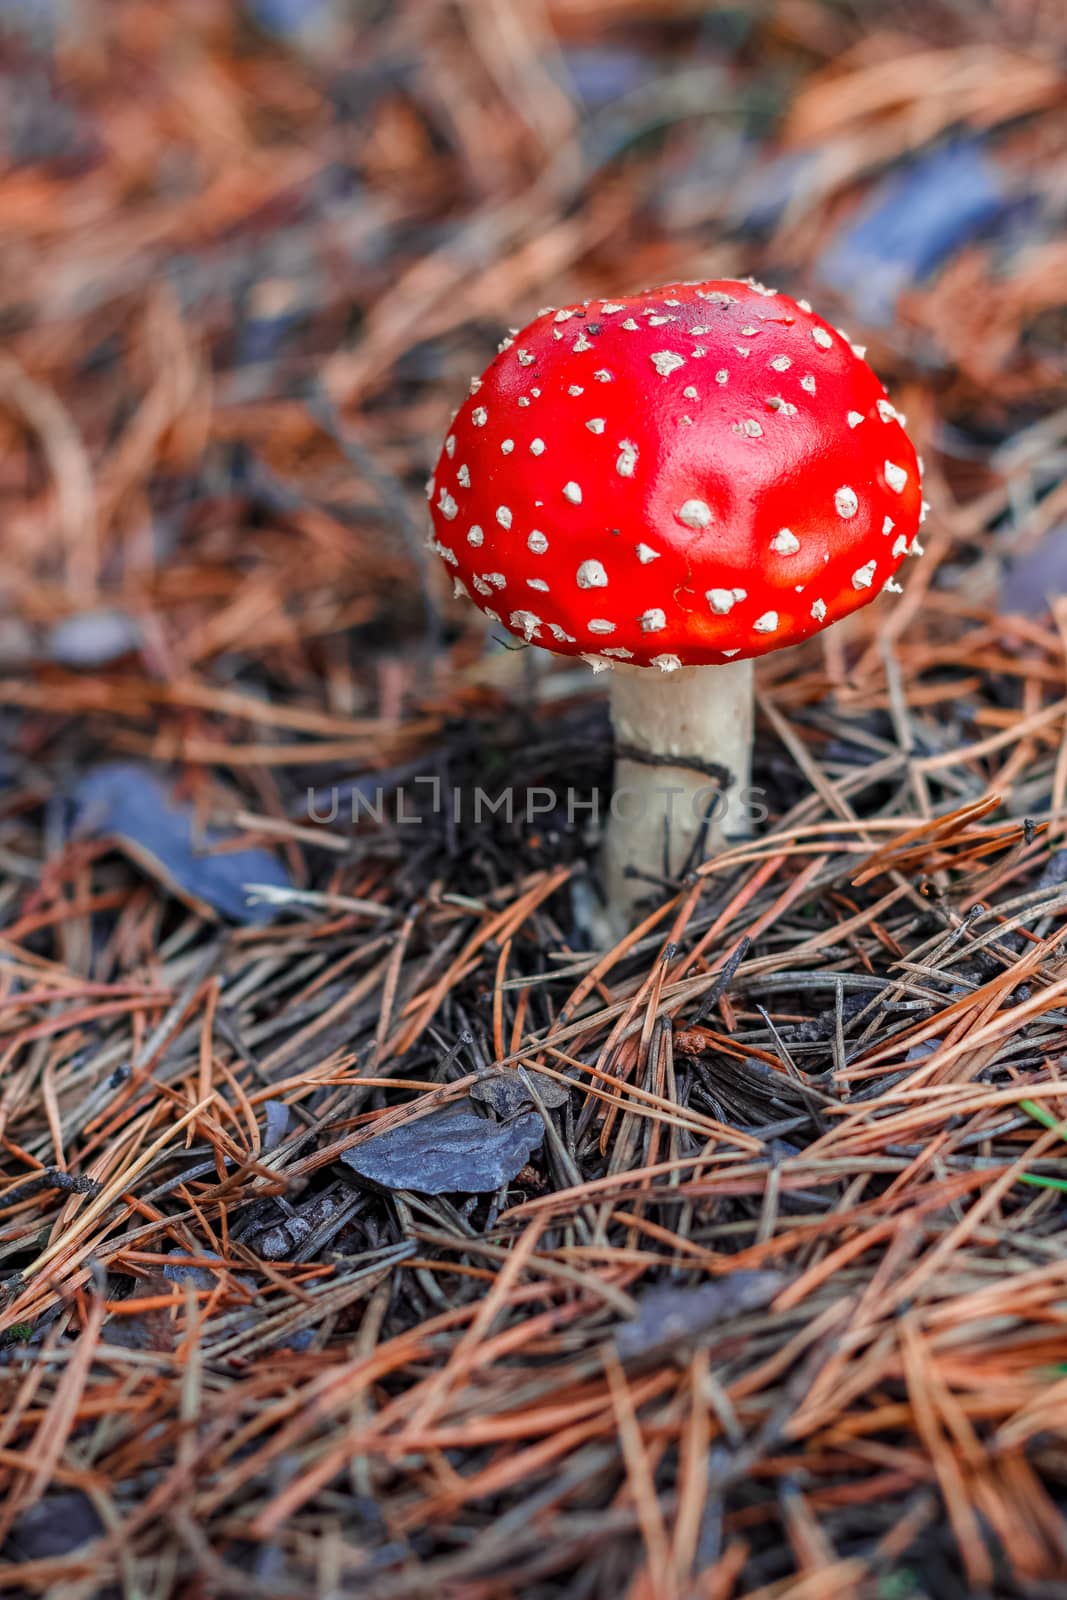 Red poisonous Amanita mushroom by sengnsp